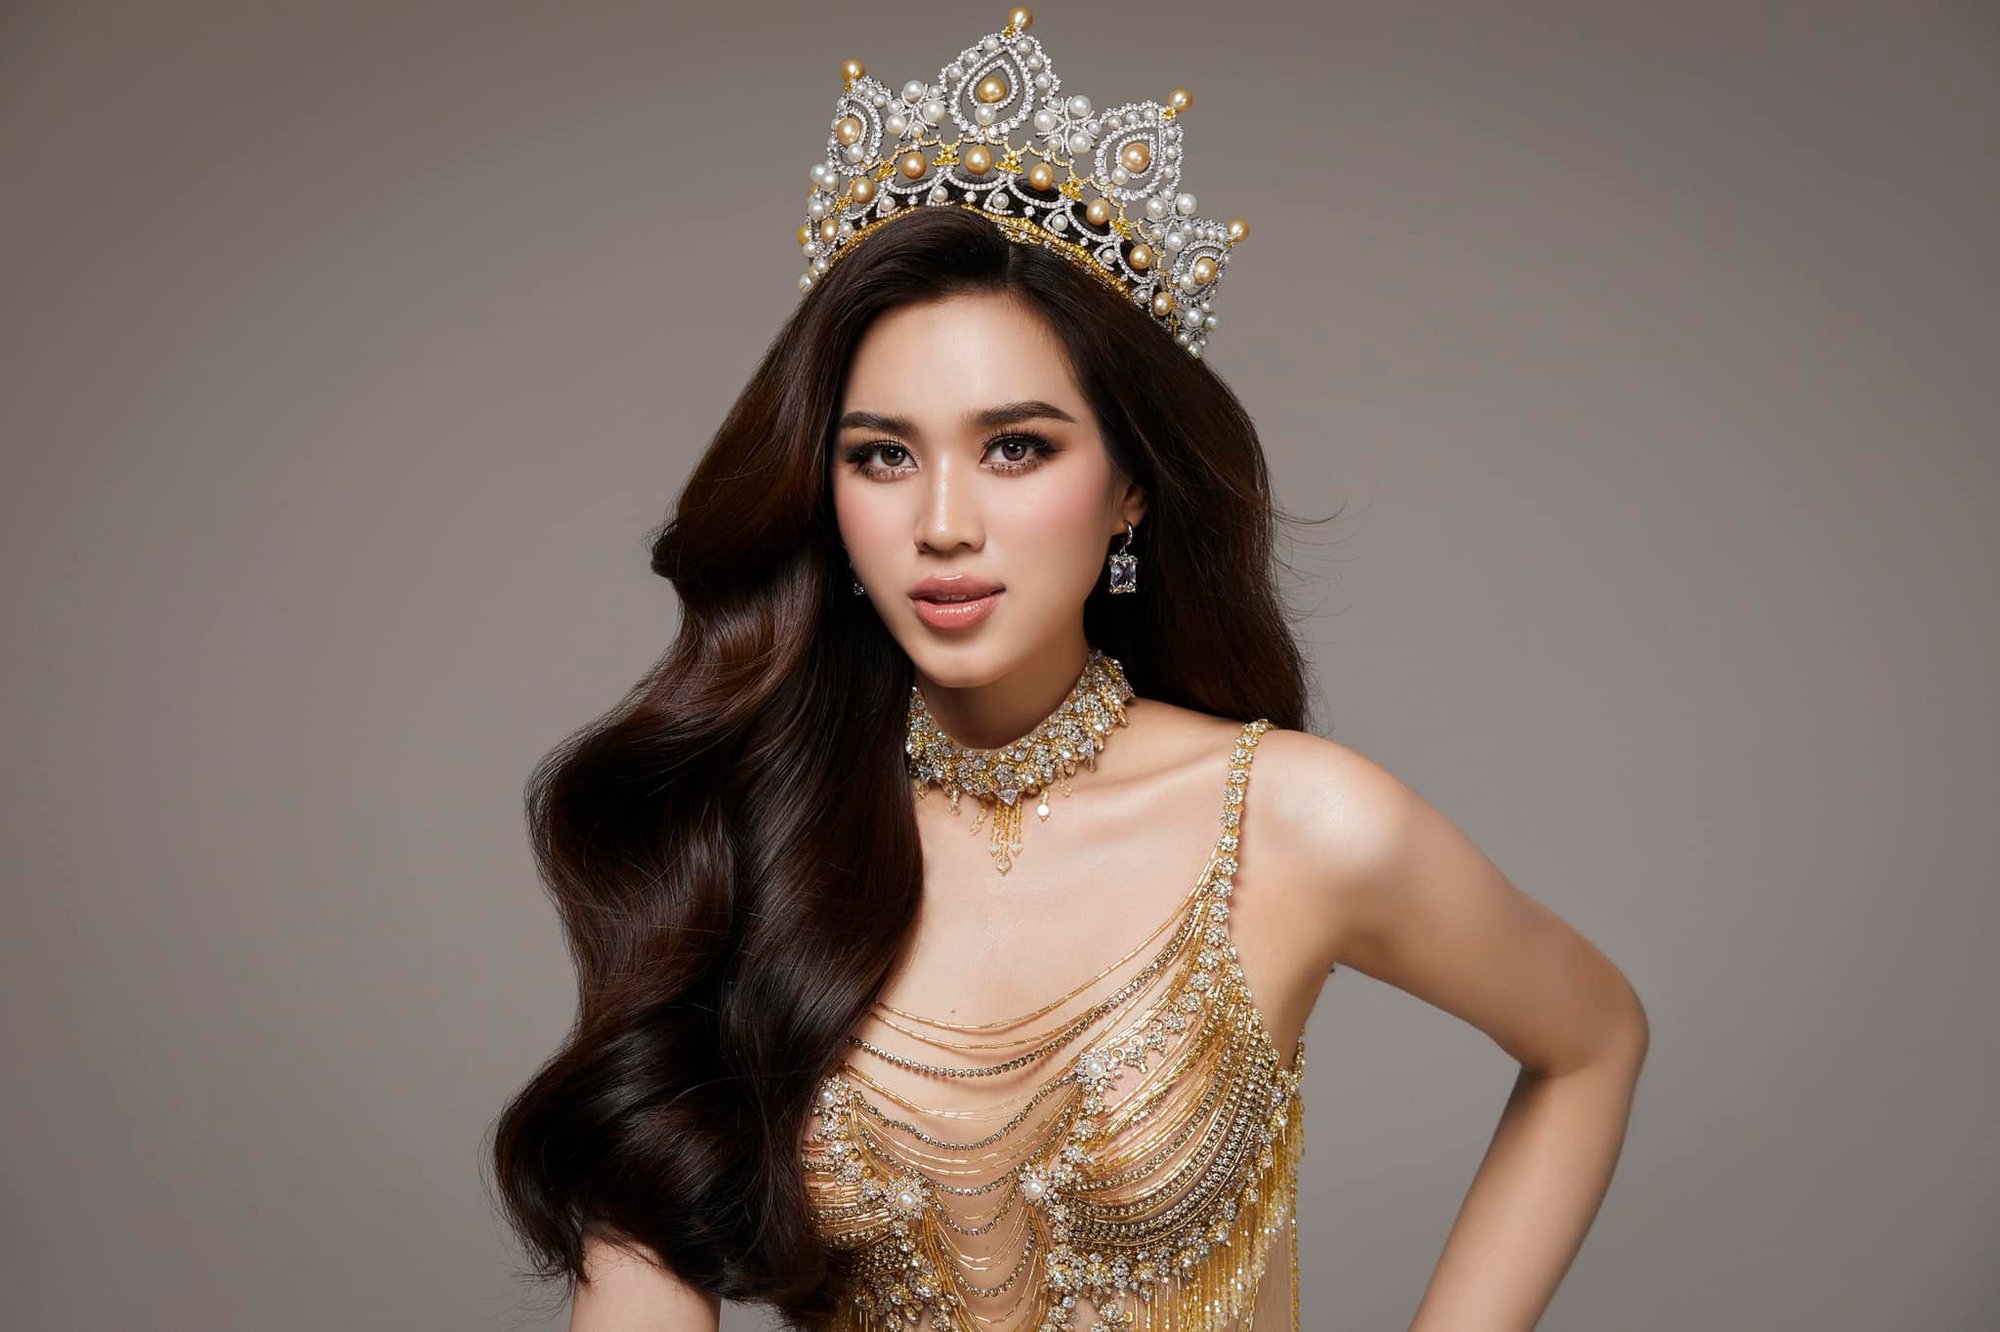 Đỗ Thị Hà hồi hộp đếm ngược đến khoảnh khắc kết thúc nhiệm kỳ Hoa hậu Việt Nam - Ảnh 2.